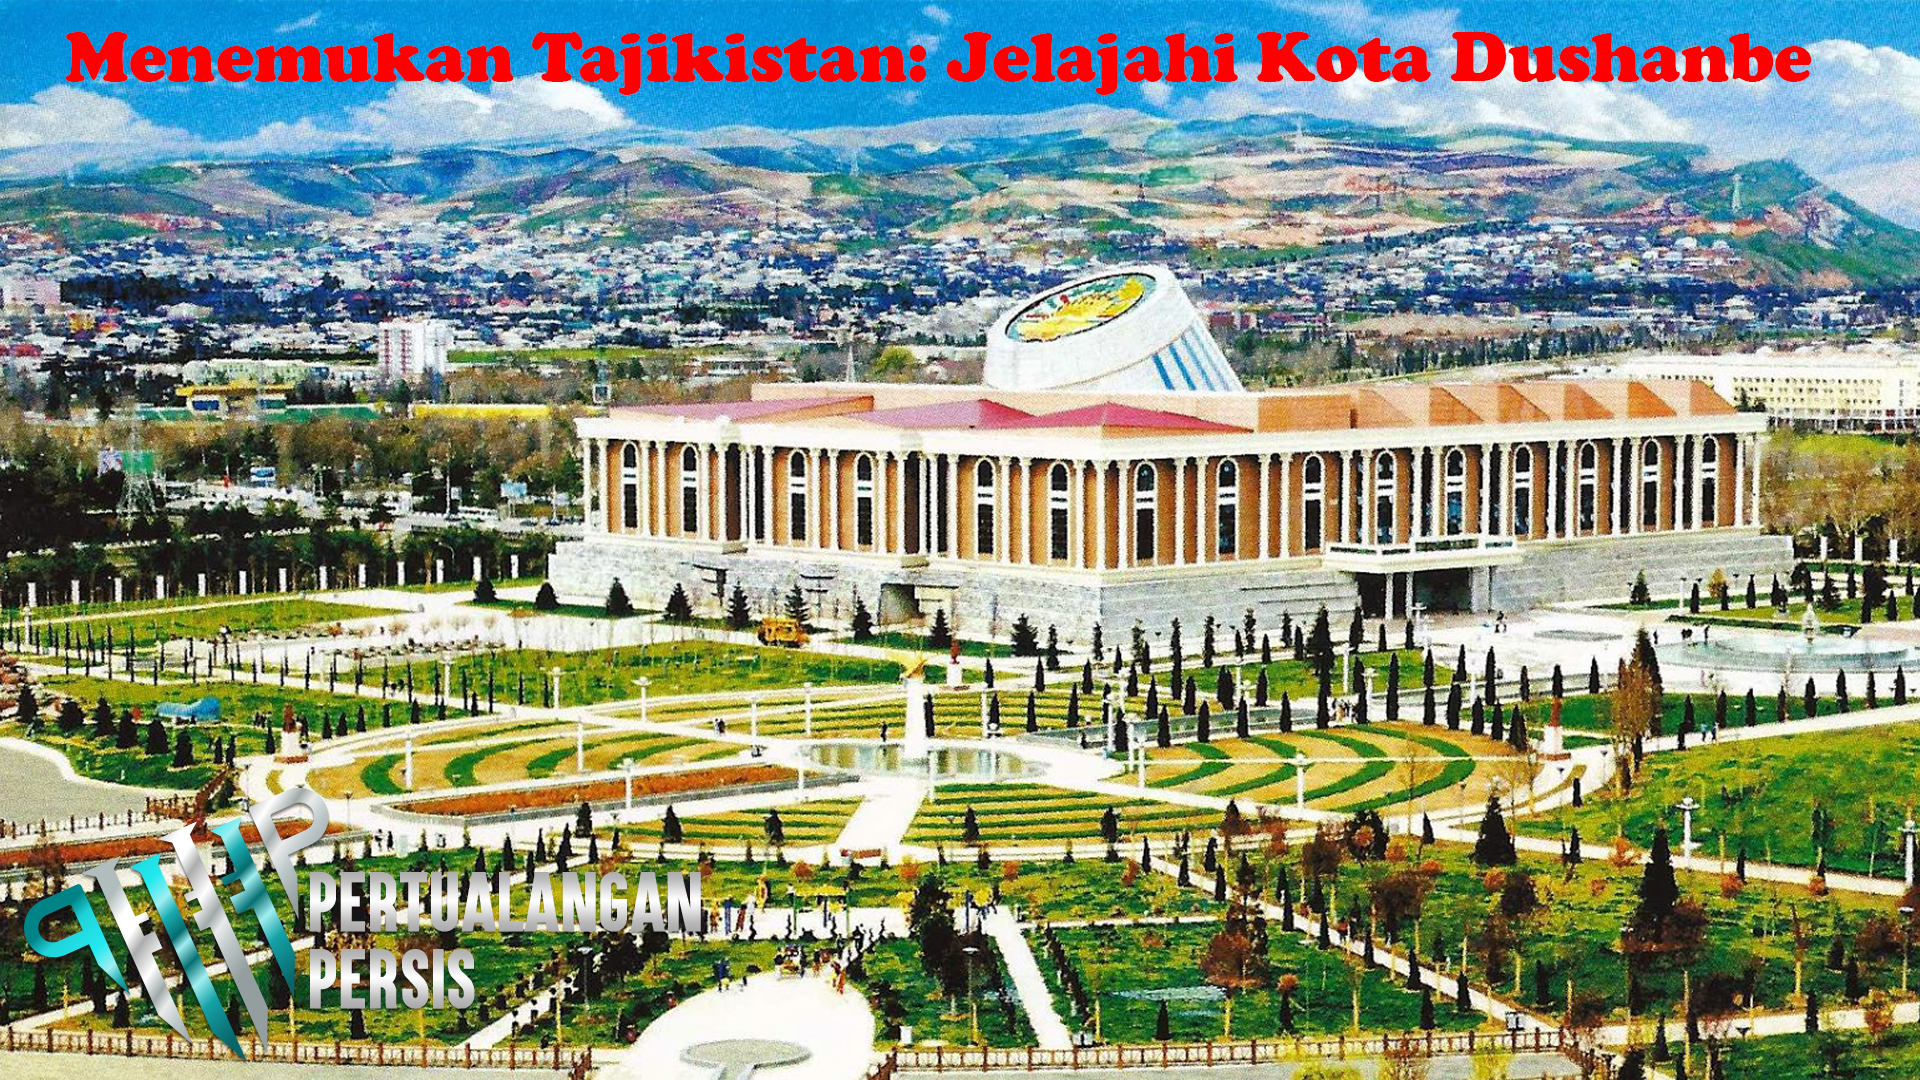 Menemukan Tajikistan: Jelajahi Kota Dushanbe